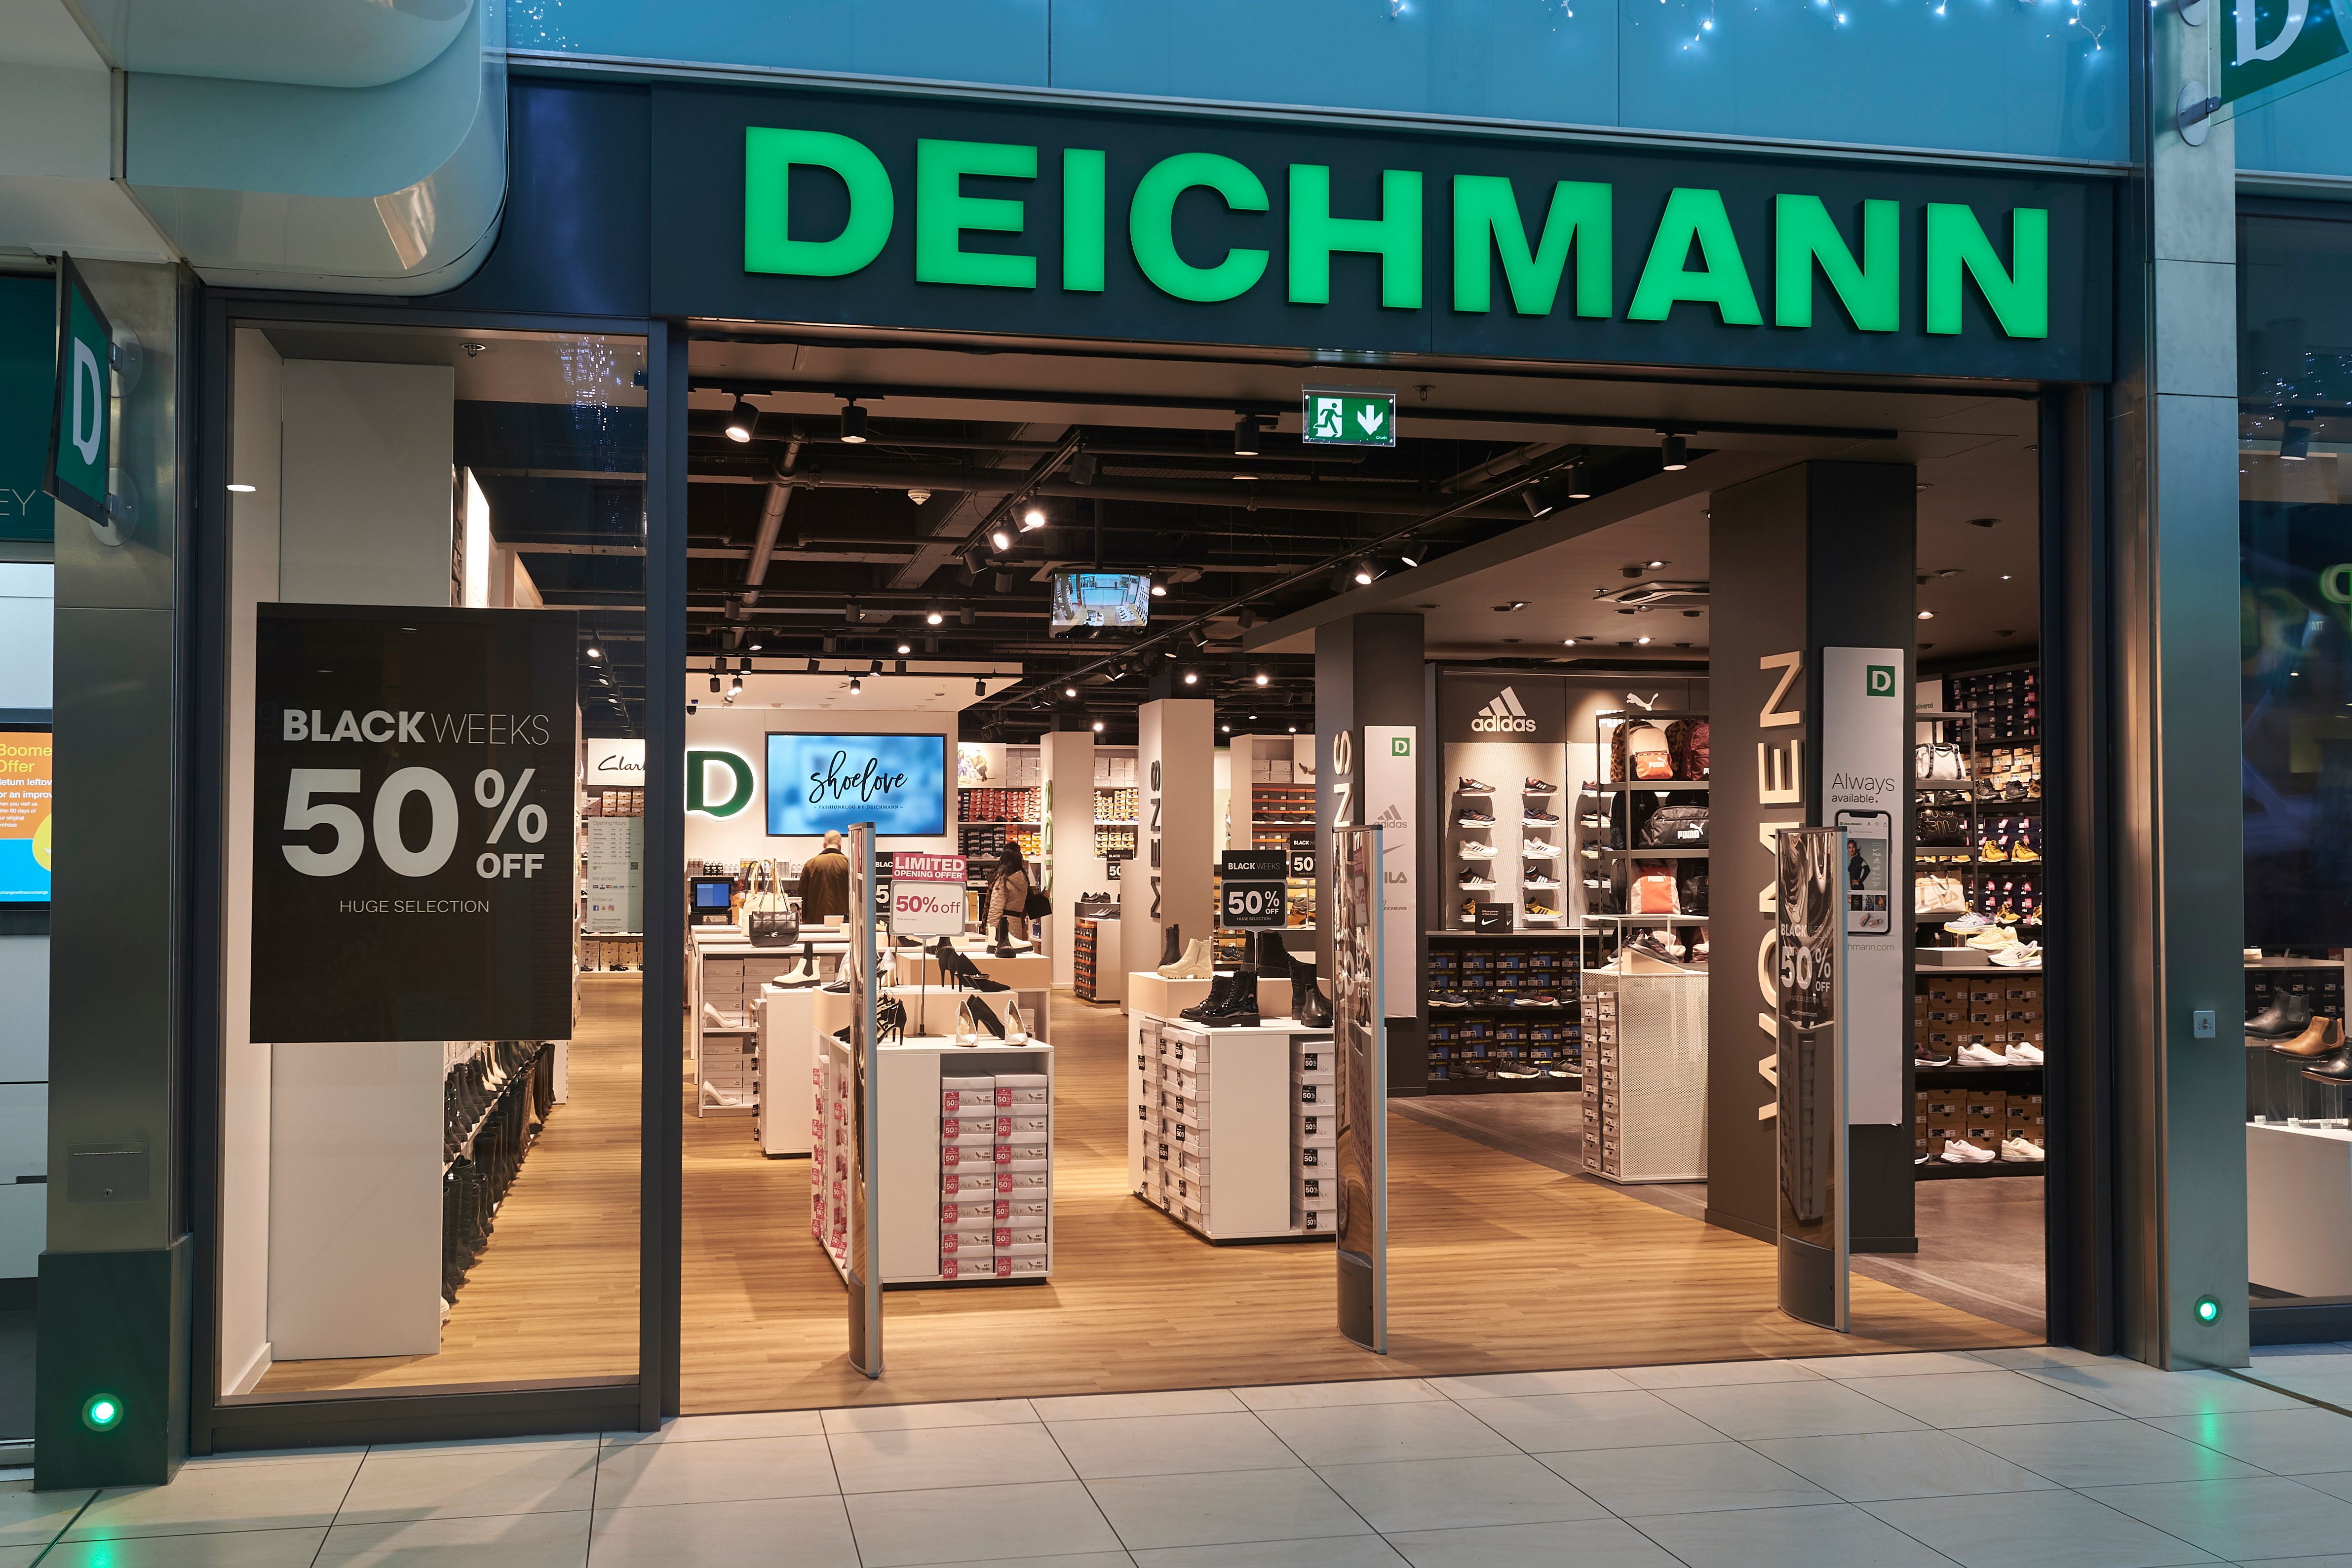 Europe’s biggest footwear retailer Deichmann ‘excited’ to open in ...